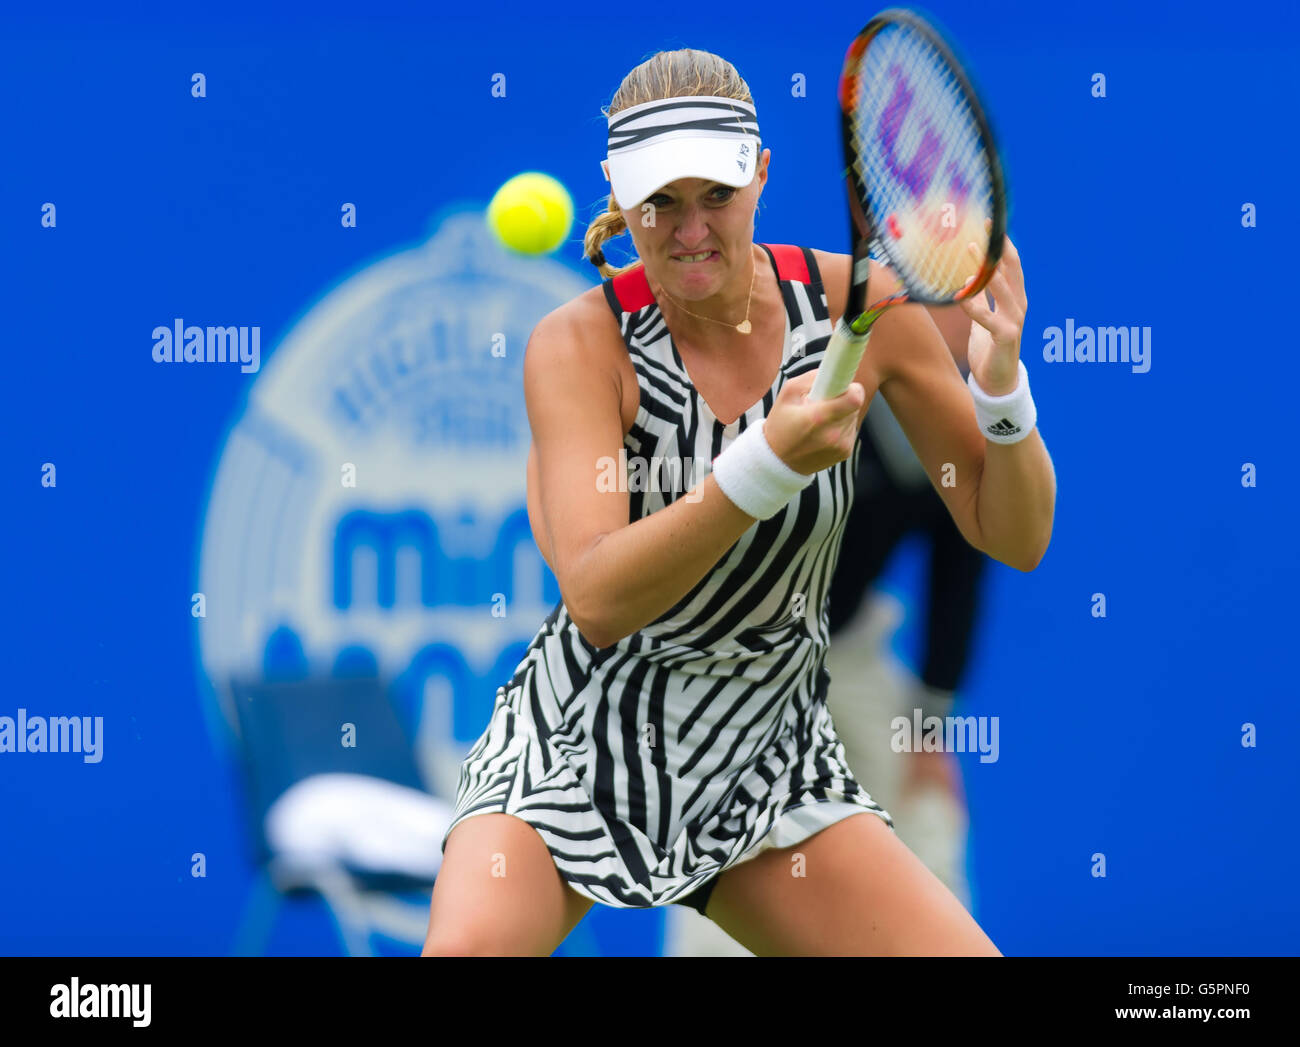 Eastbourne, Royaume-Uni. 23 Juin, 2016. Kristina Mladenovic en action à la 2016 Aegon International WTA Premier tournoi de tennis Crédit : Jimmie48 Photographie/Alamy Live News Banque D'Images